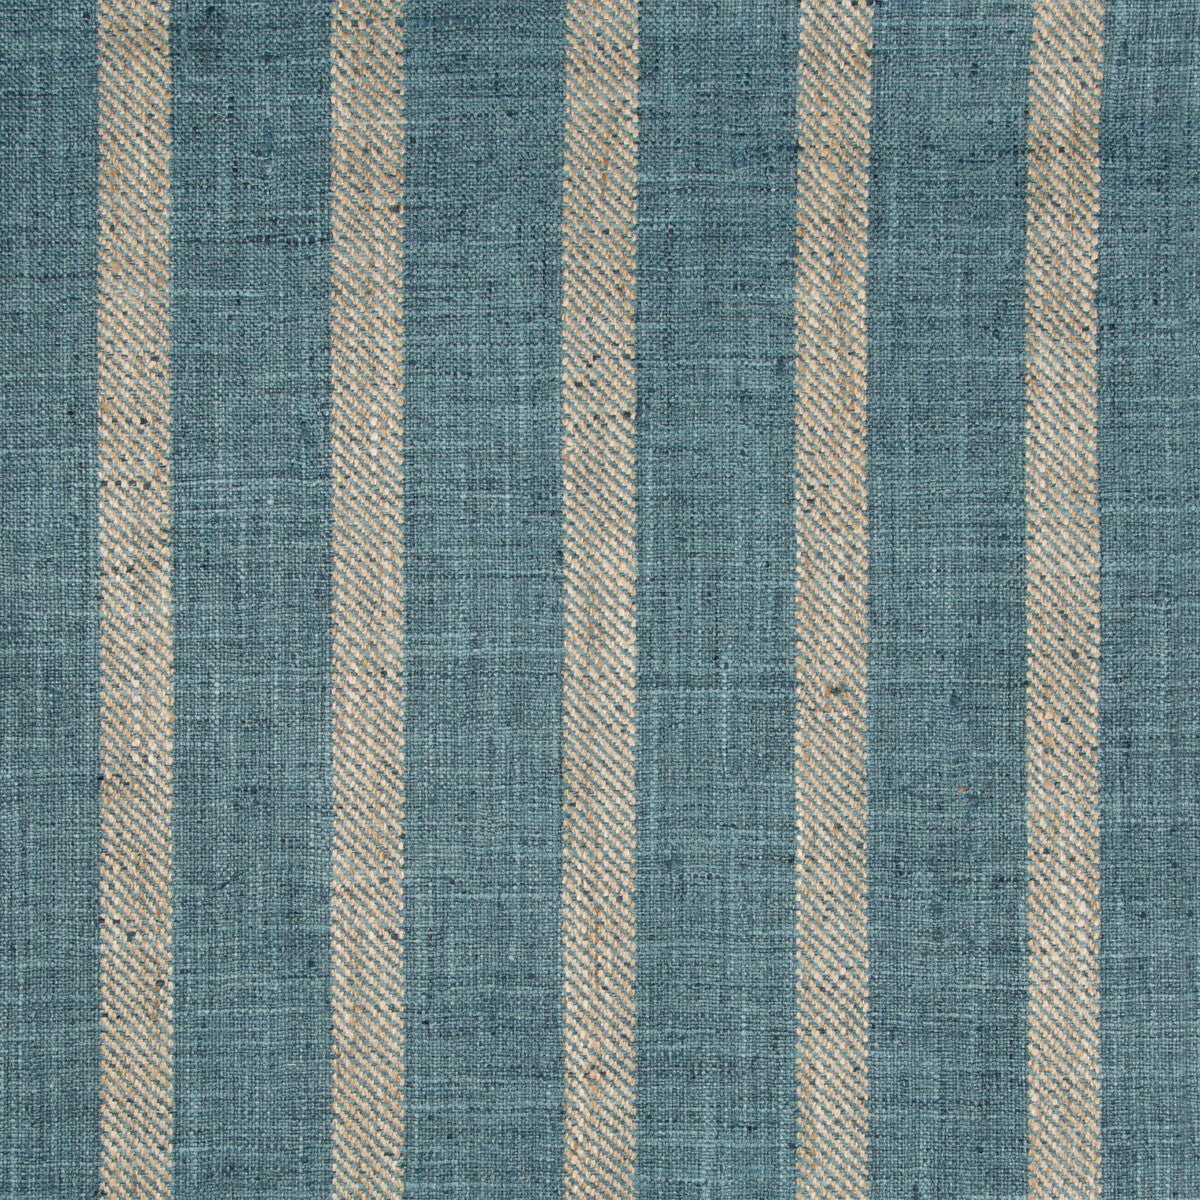 Kravet Basics fabric in 34985-1635 color - pattern 34985.1635.0 - by Kravet Basics